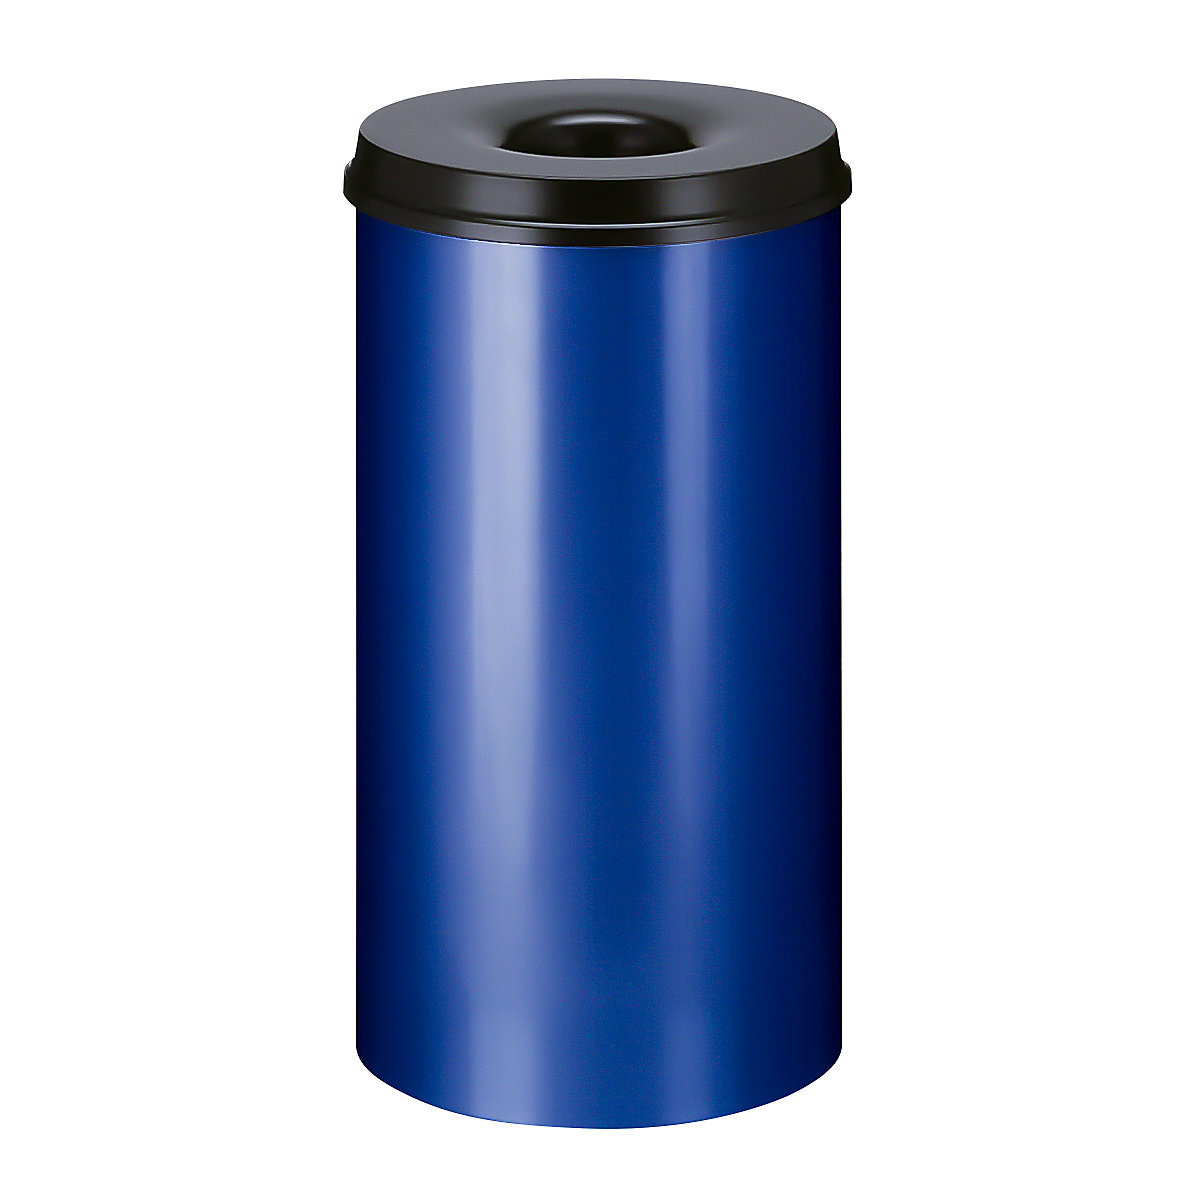 Önoltó papírkosár, űrtartalom 50 l, ma x Ø 625 x 335 mm, ház kék / oltófedél fekete színben